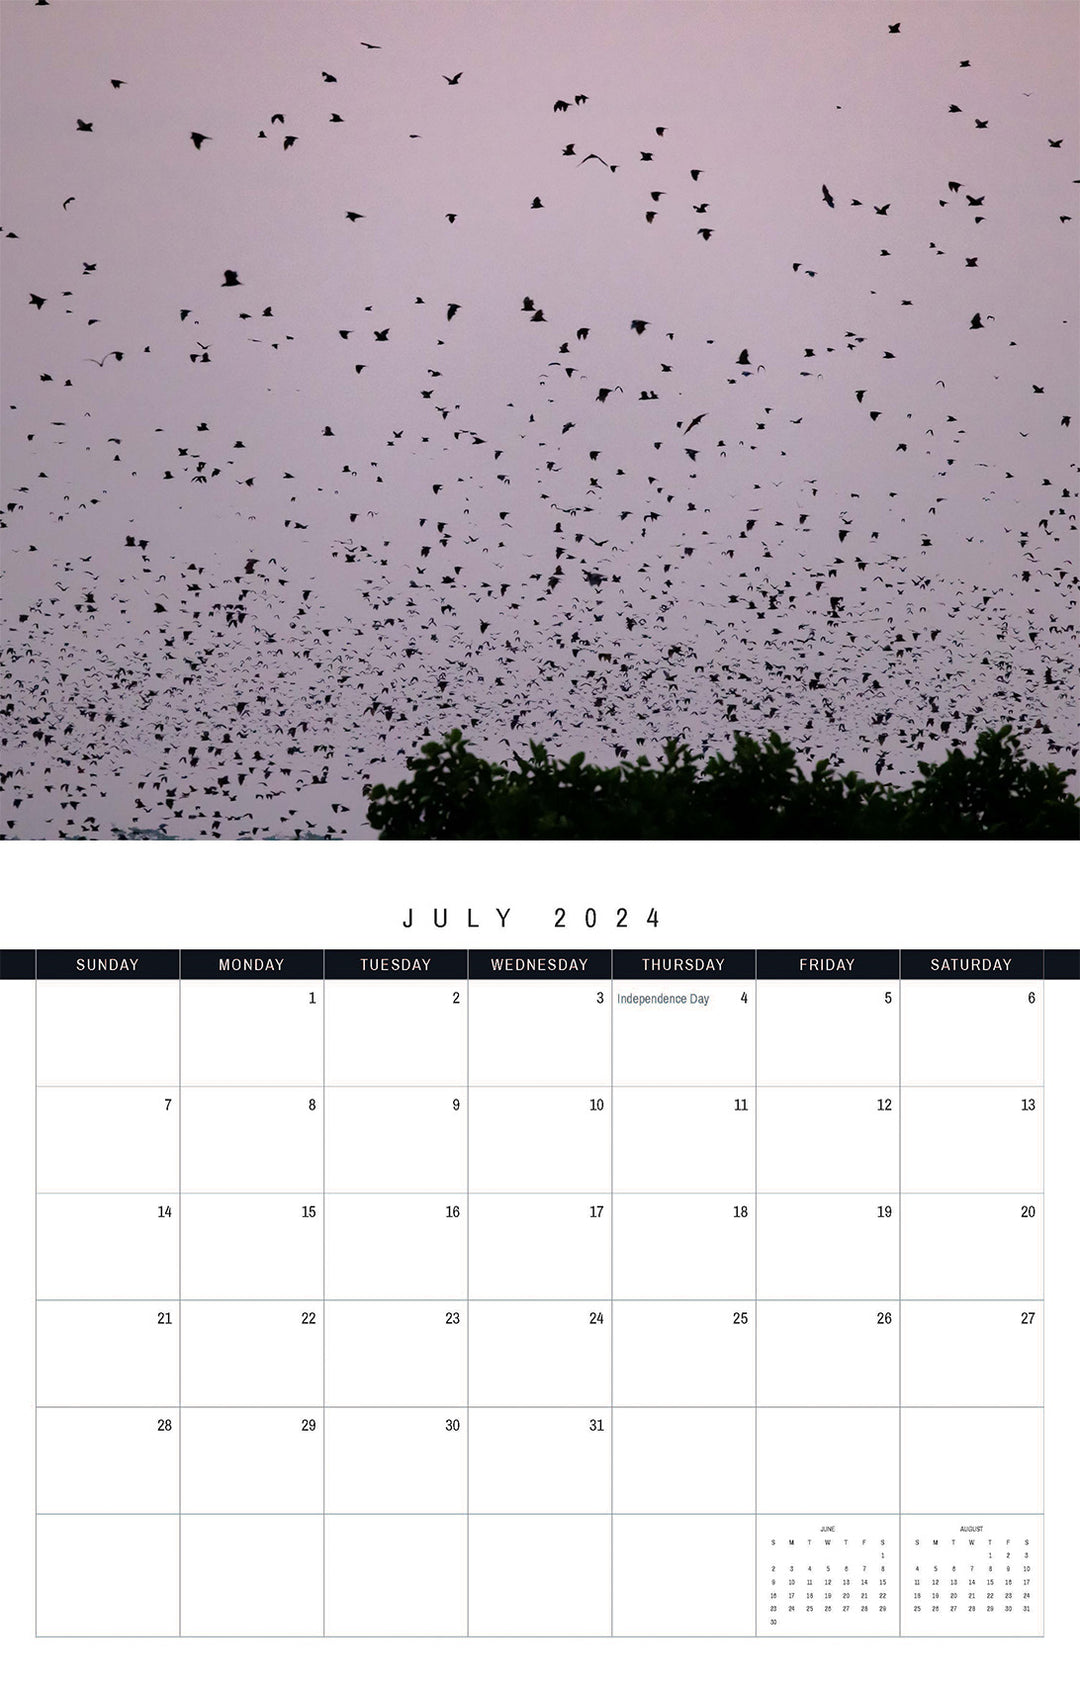 The Kasanka Bats 2024 Calendar